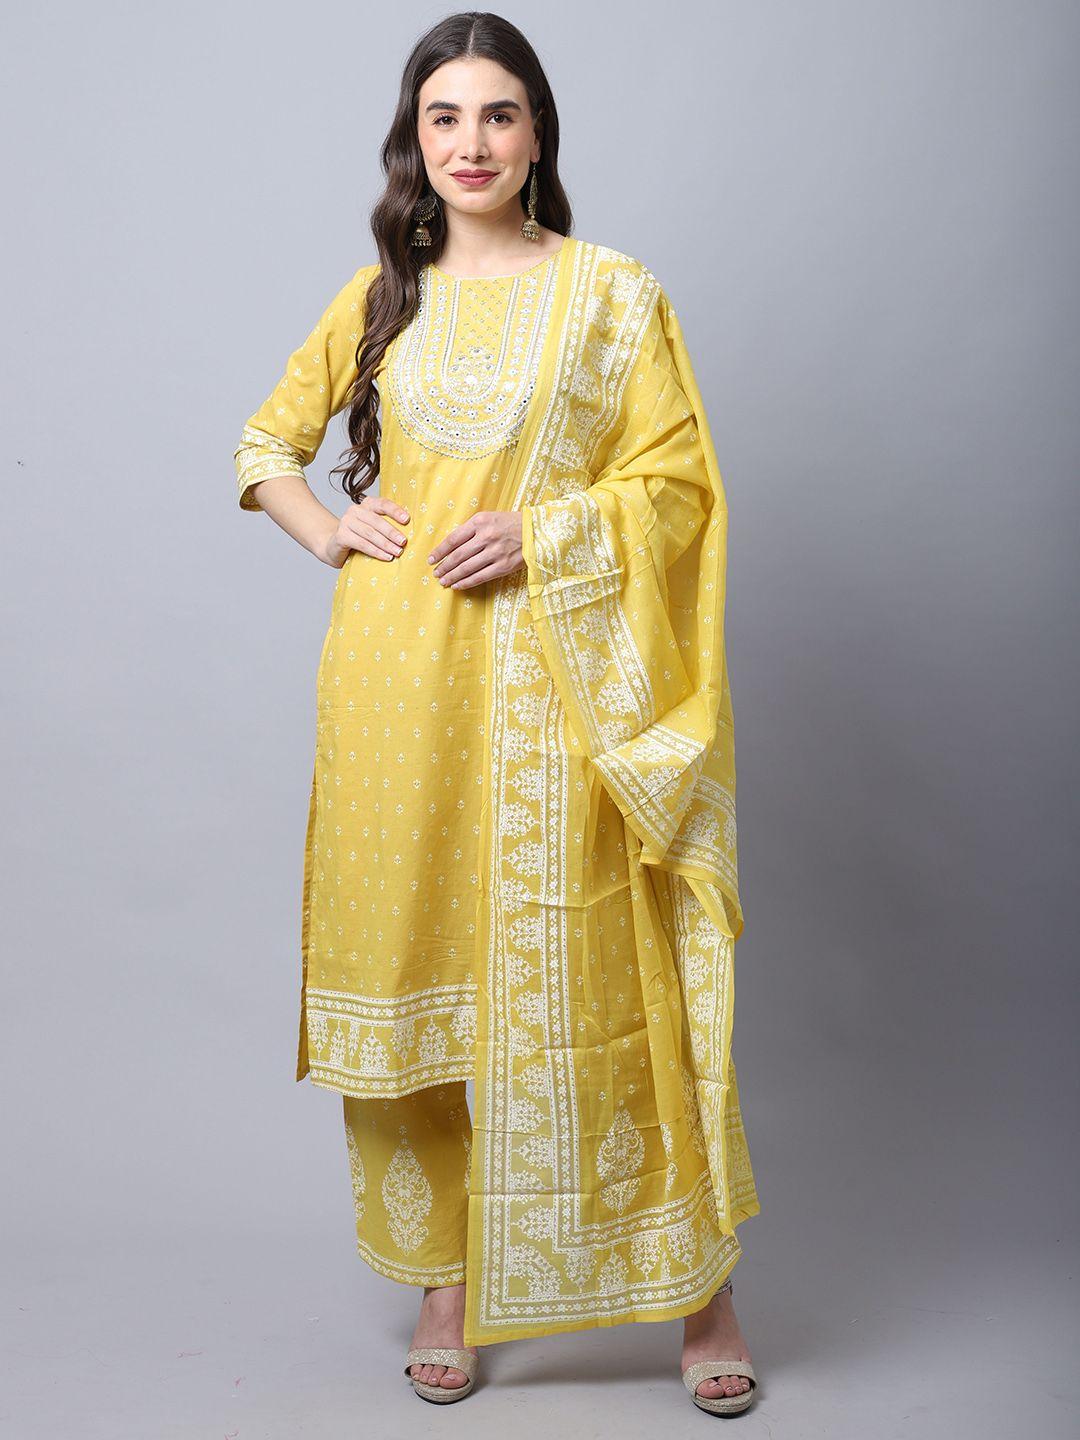 rajnandini-women-yellow-ethnic-motifs-yoke-design-pure-cotton-kurta-with-palazzos-&-with-dupatta